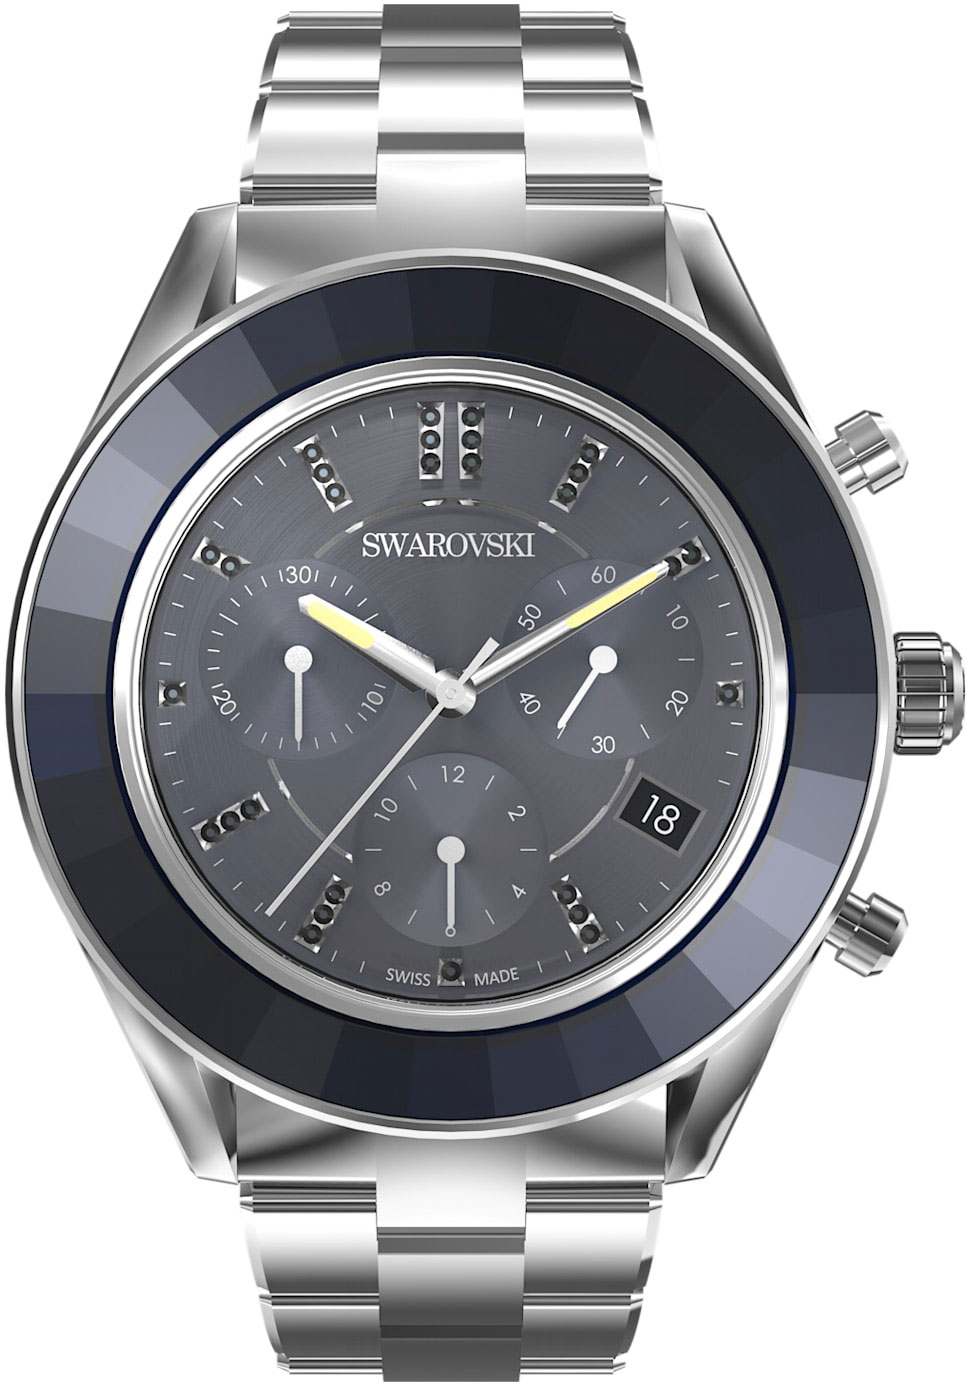 Швейцарские наручные часы Swarovski 5610481 с хронографом